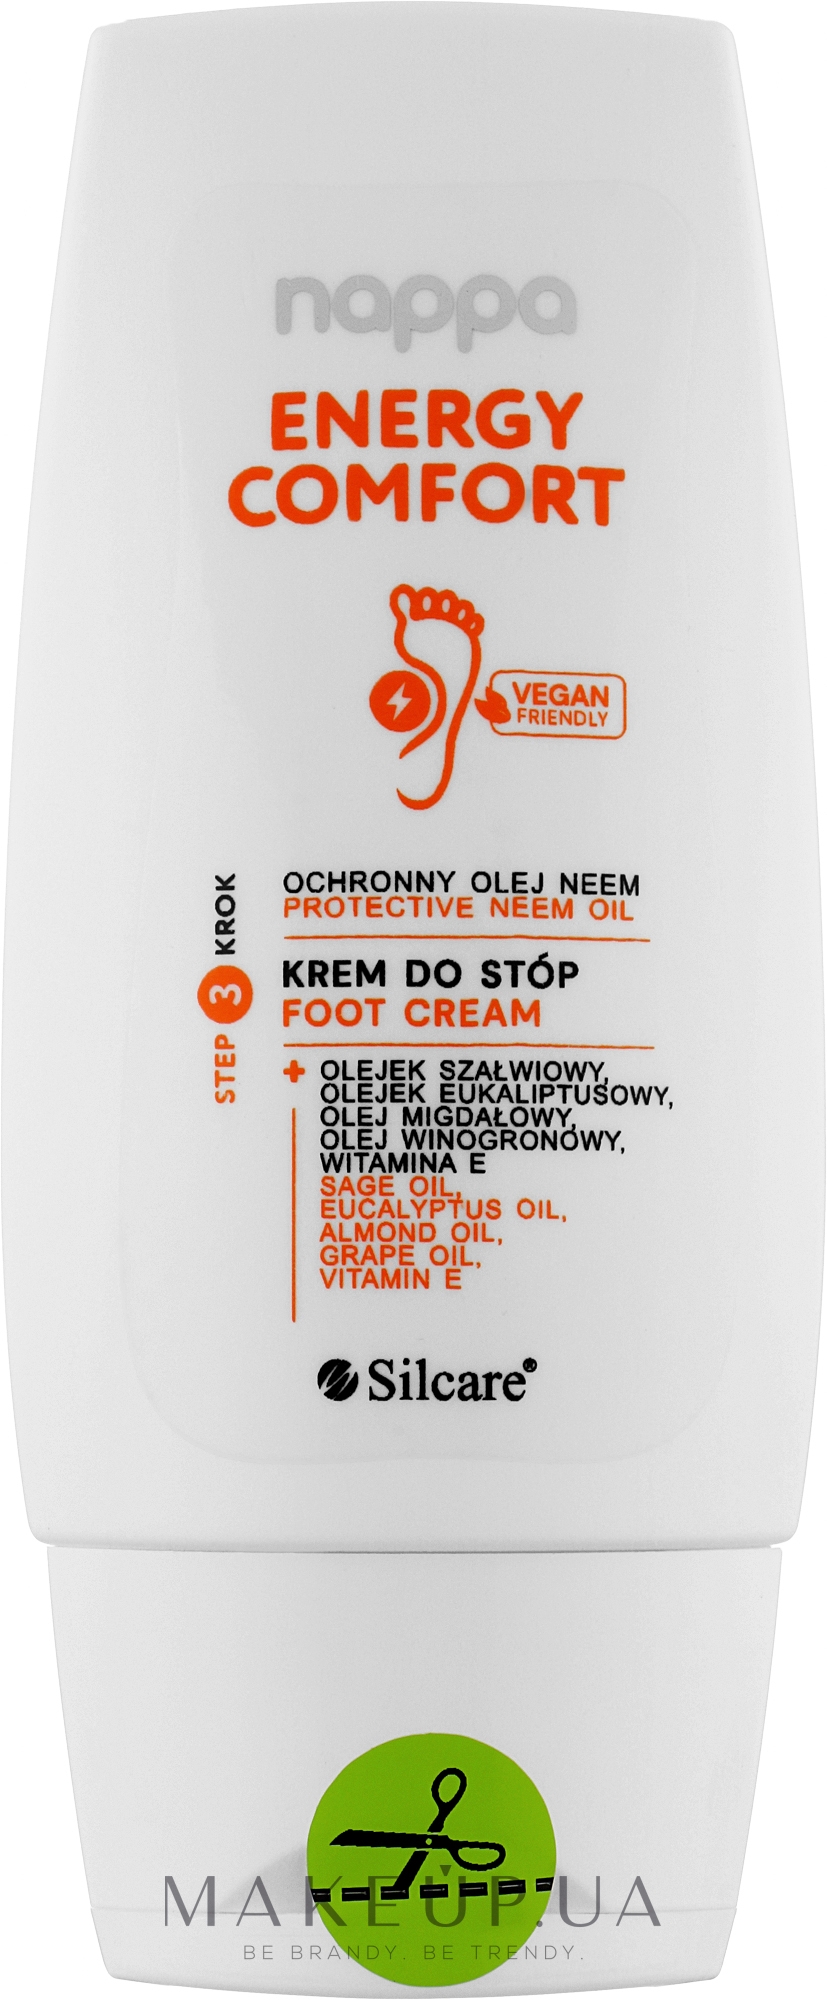 Крем для ніг - Silcare Nappa Foot Cream Neem Oil & Sage Oil — фото 100ml